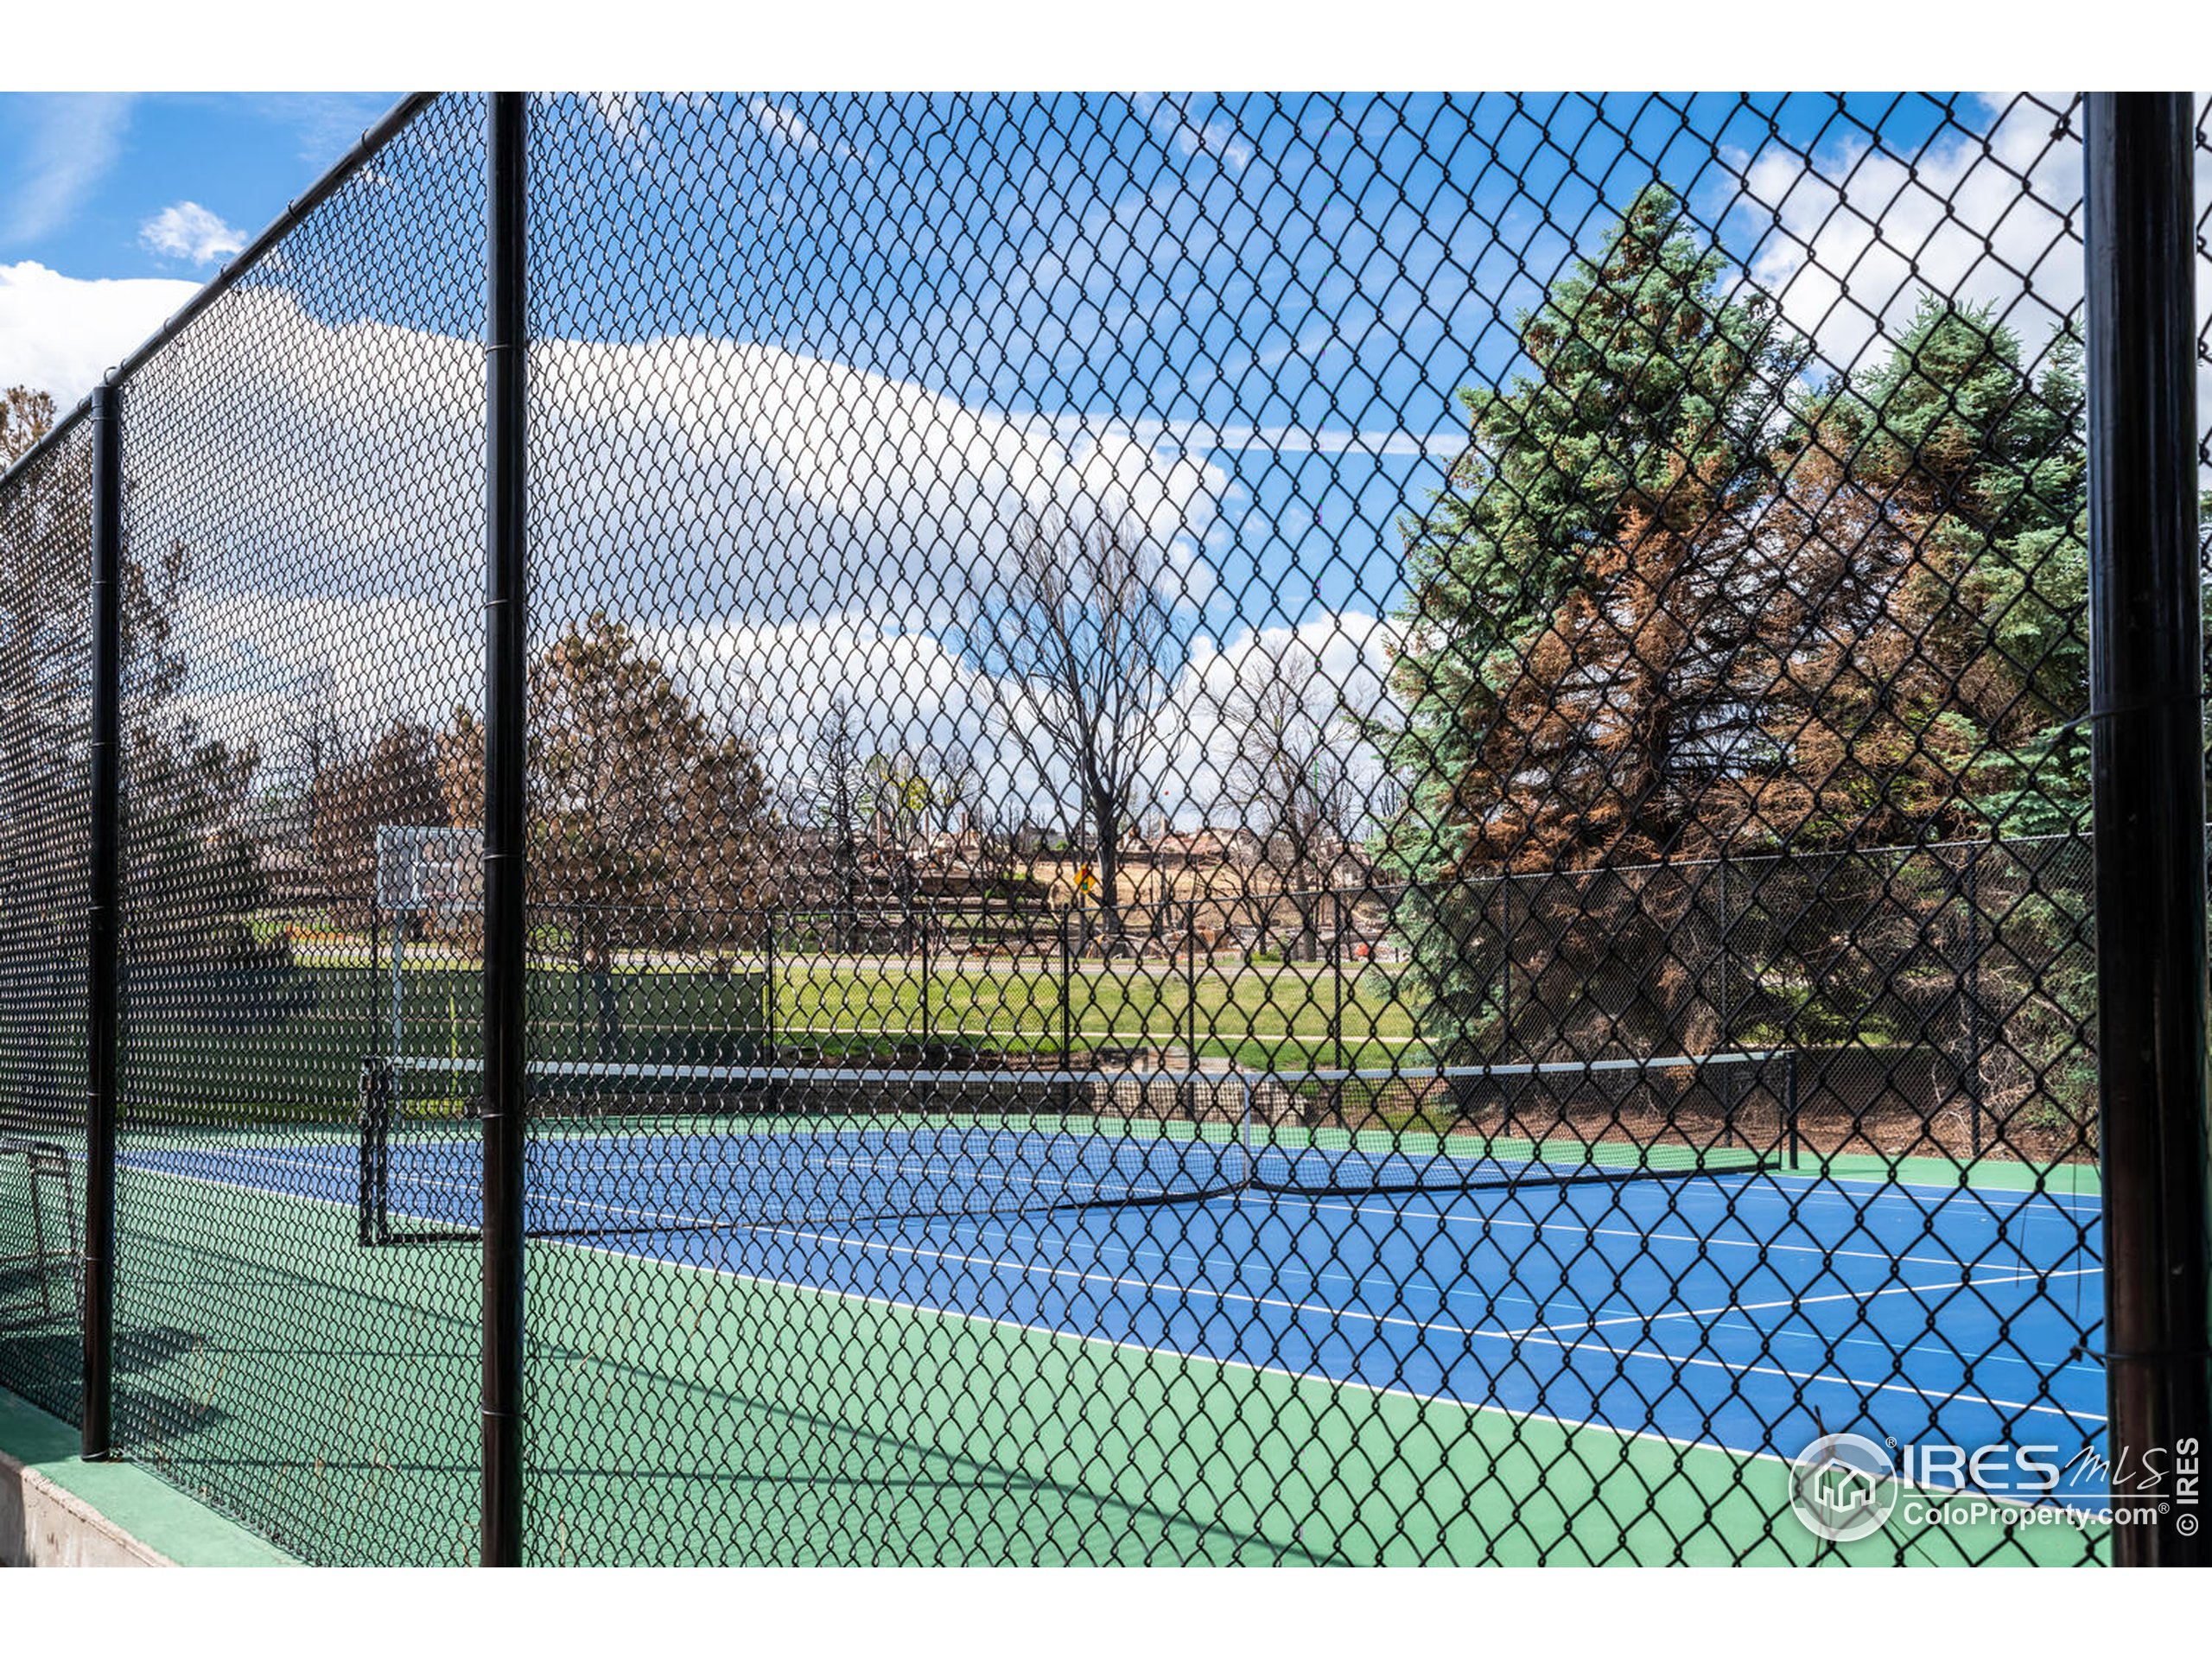 Neighborhood Tennis Courts